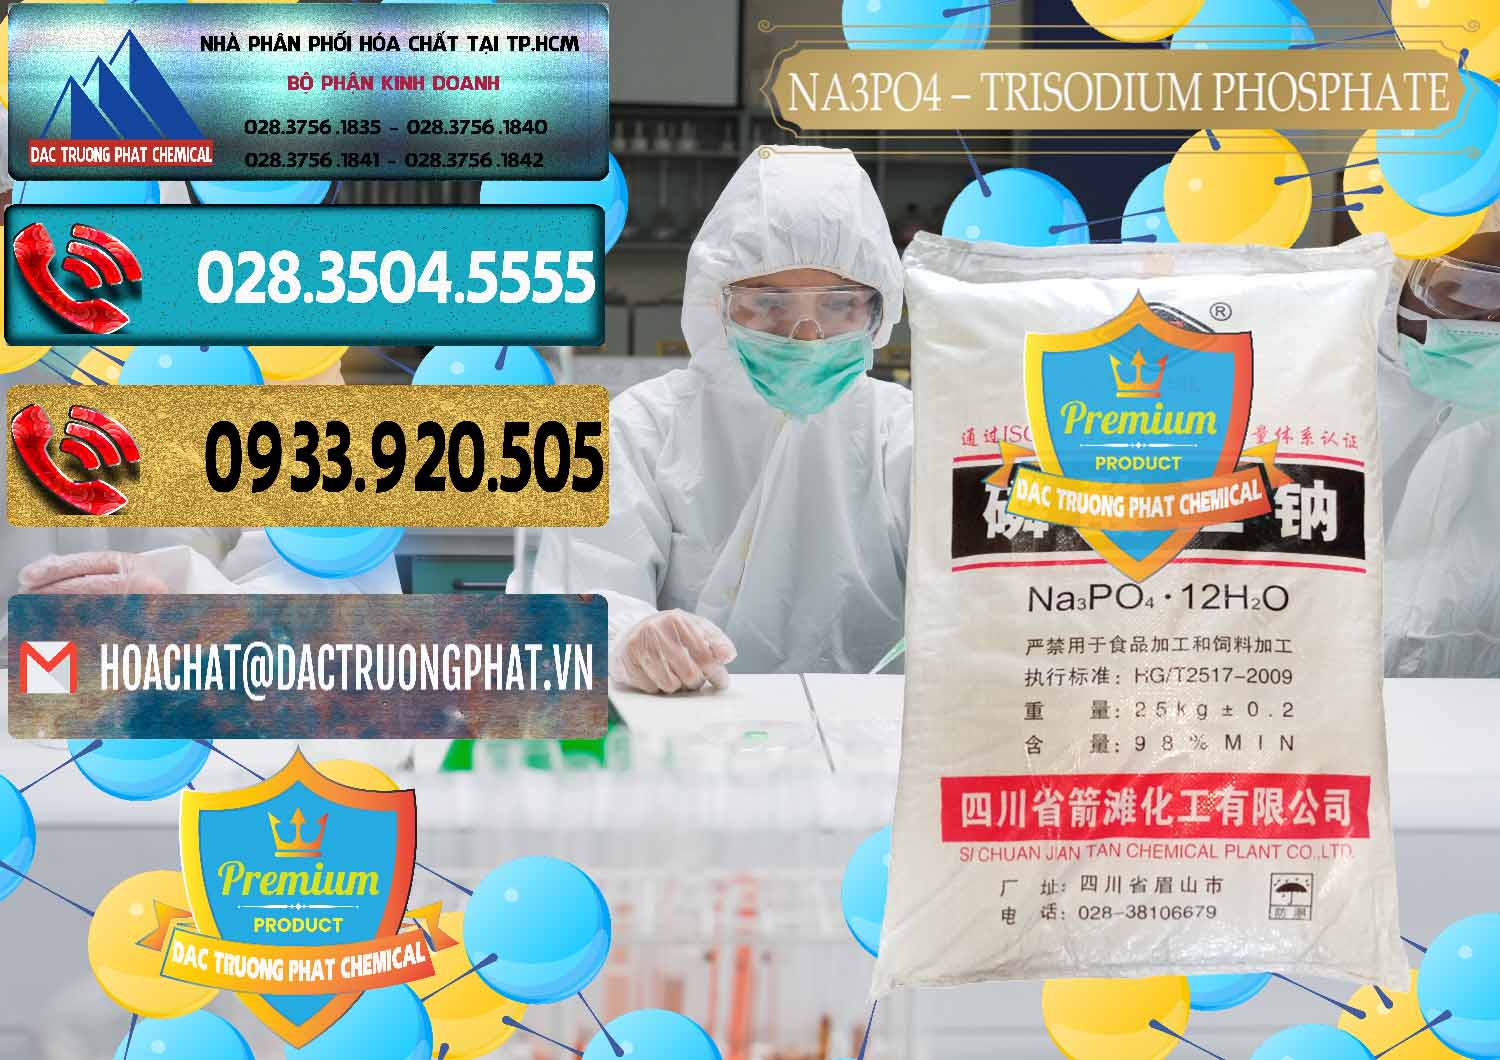 Đơn vị chuyên bán _ cung cấp Na3PO4 – Trisodium Phosphate Trung Quốc China JT - 0102 - Nơi nhập khẩu ( cung cấp ) hóa chất tại TP.HCM - hoachatdetnhuom.com